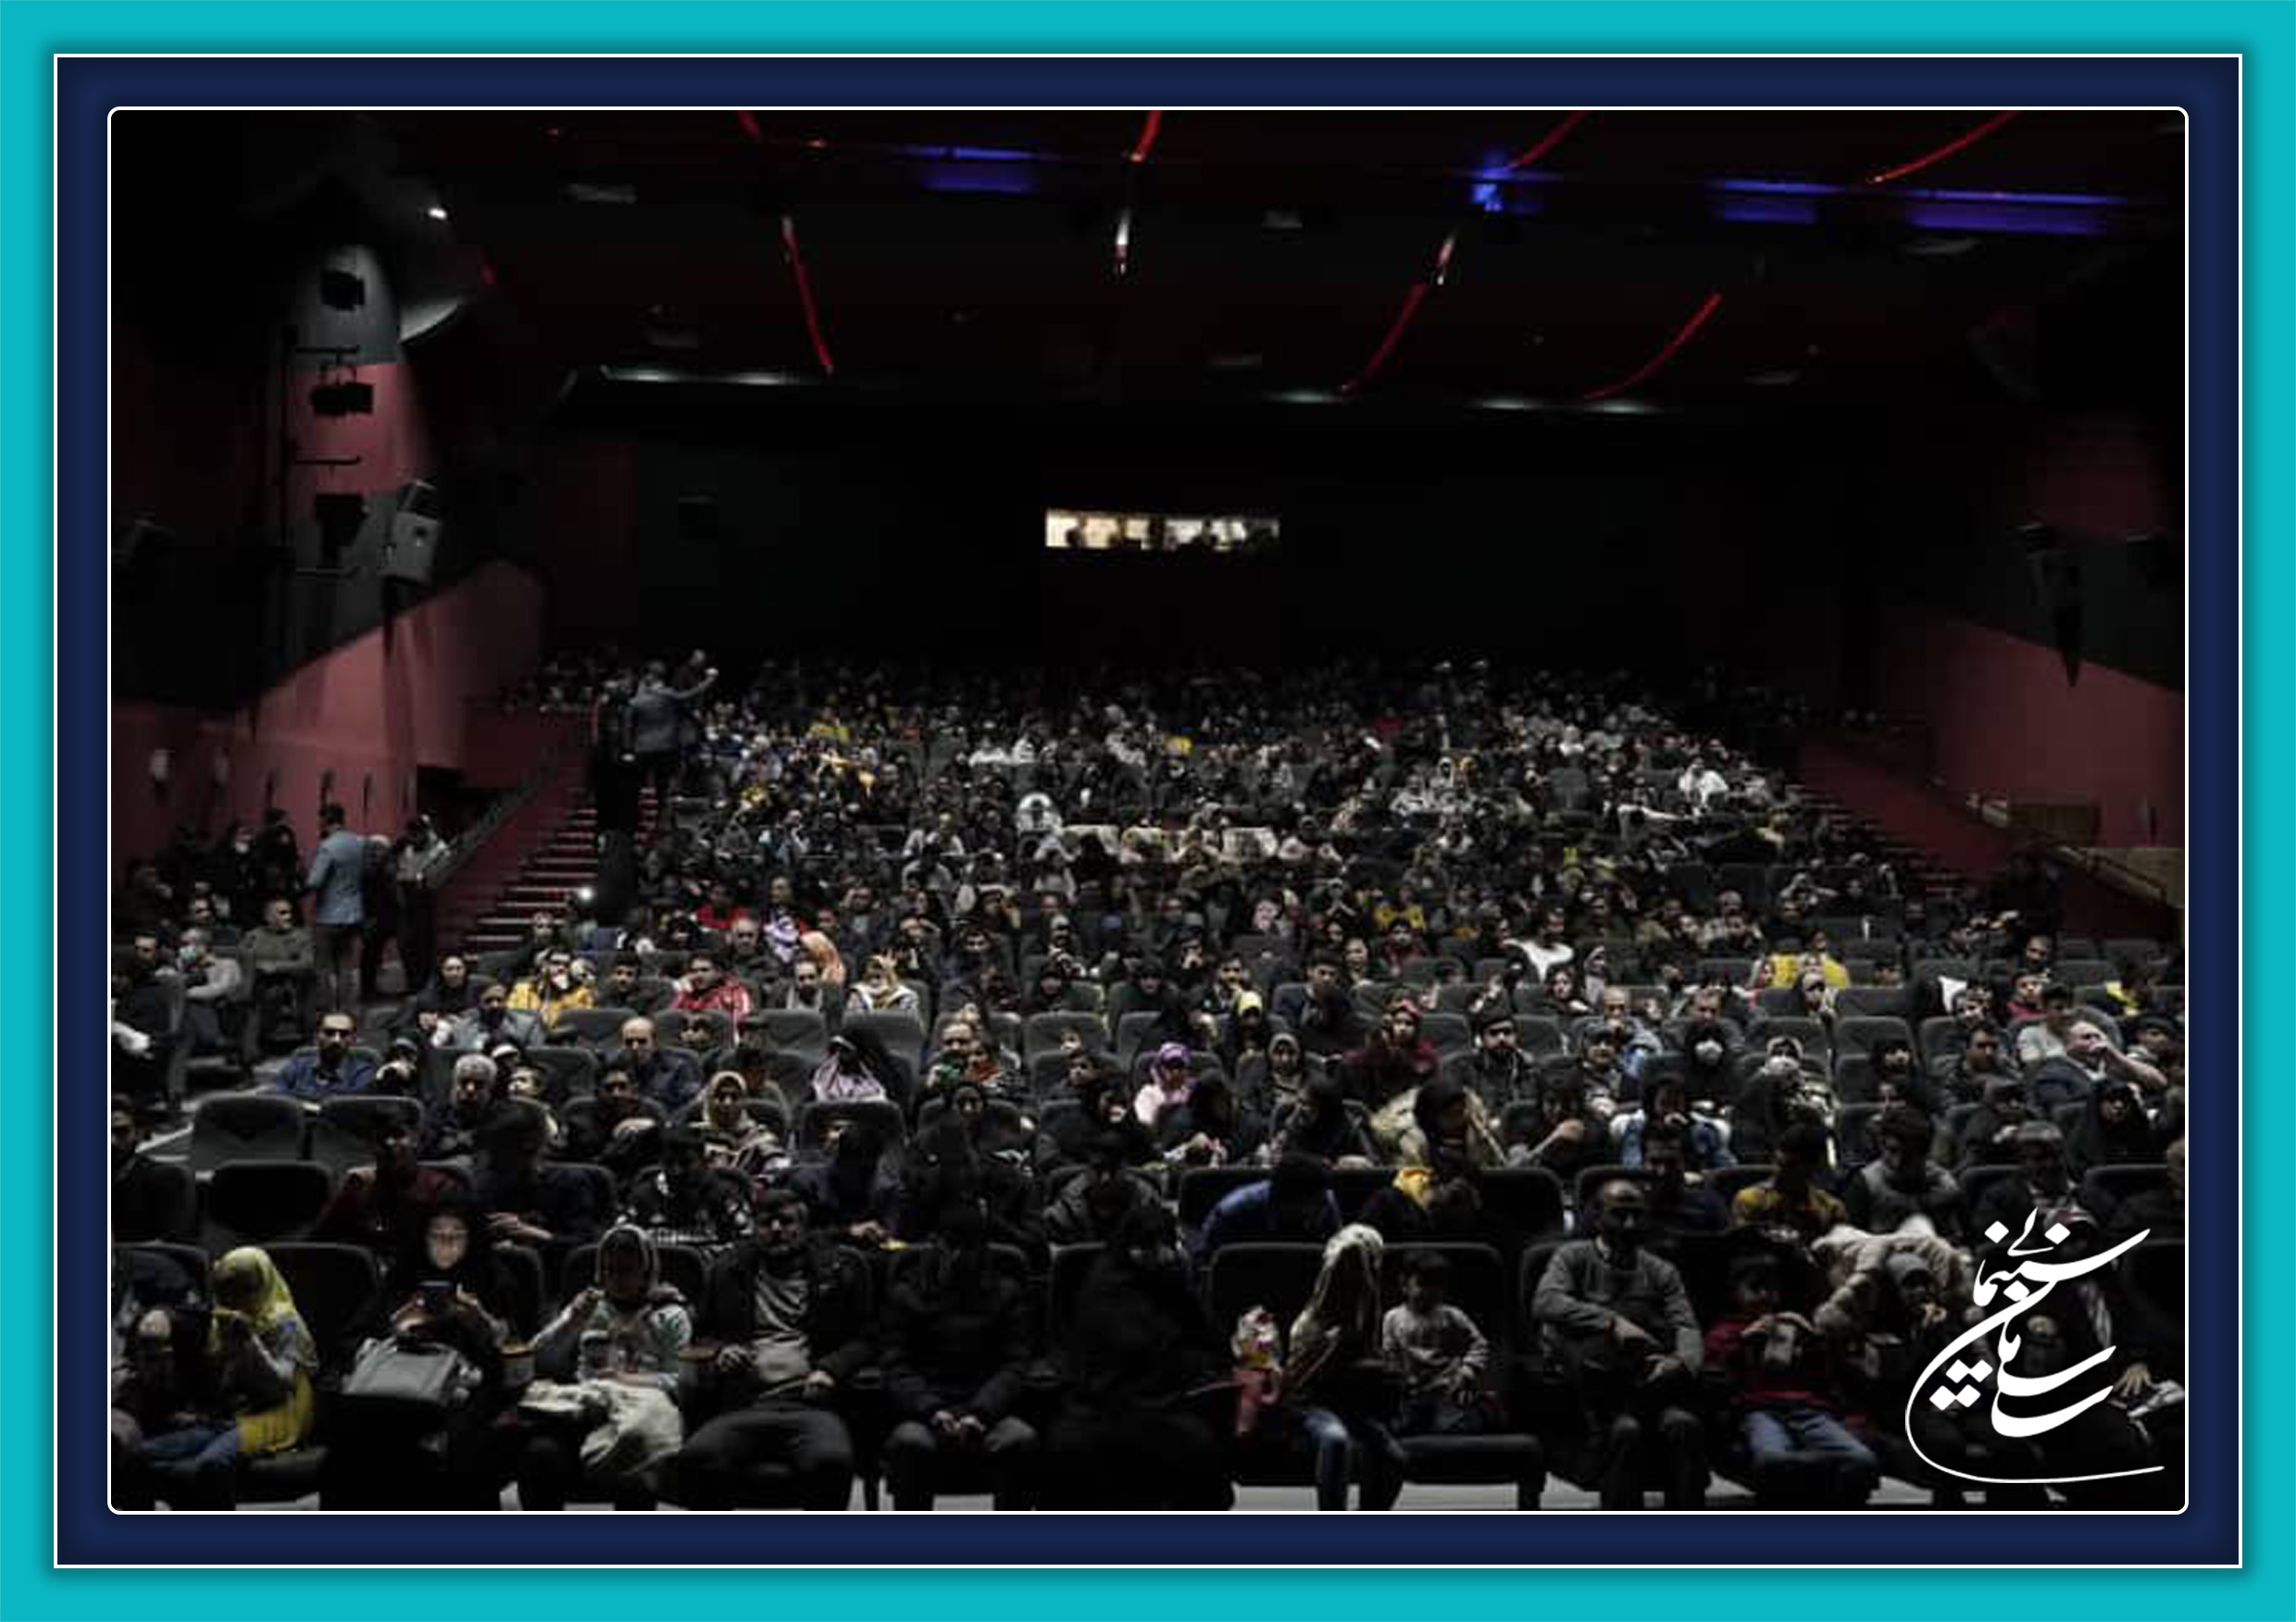 فروش سینماها در اردیبهشت ماه از مرز 115 میلیارد تومان گذشت